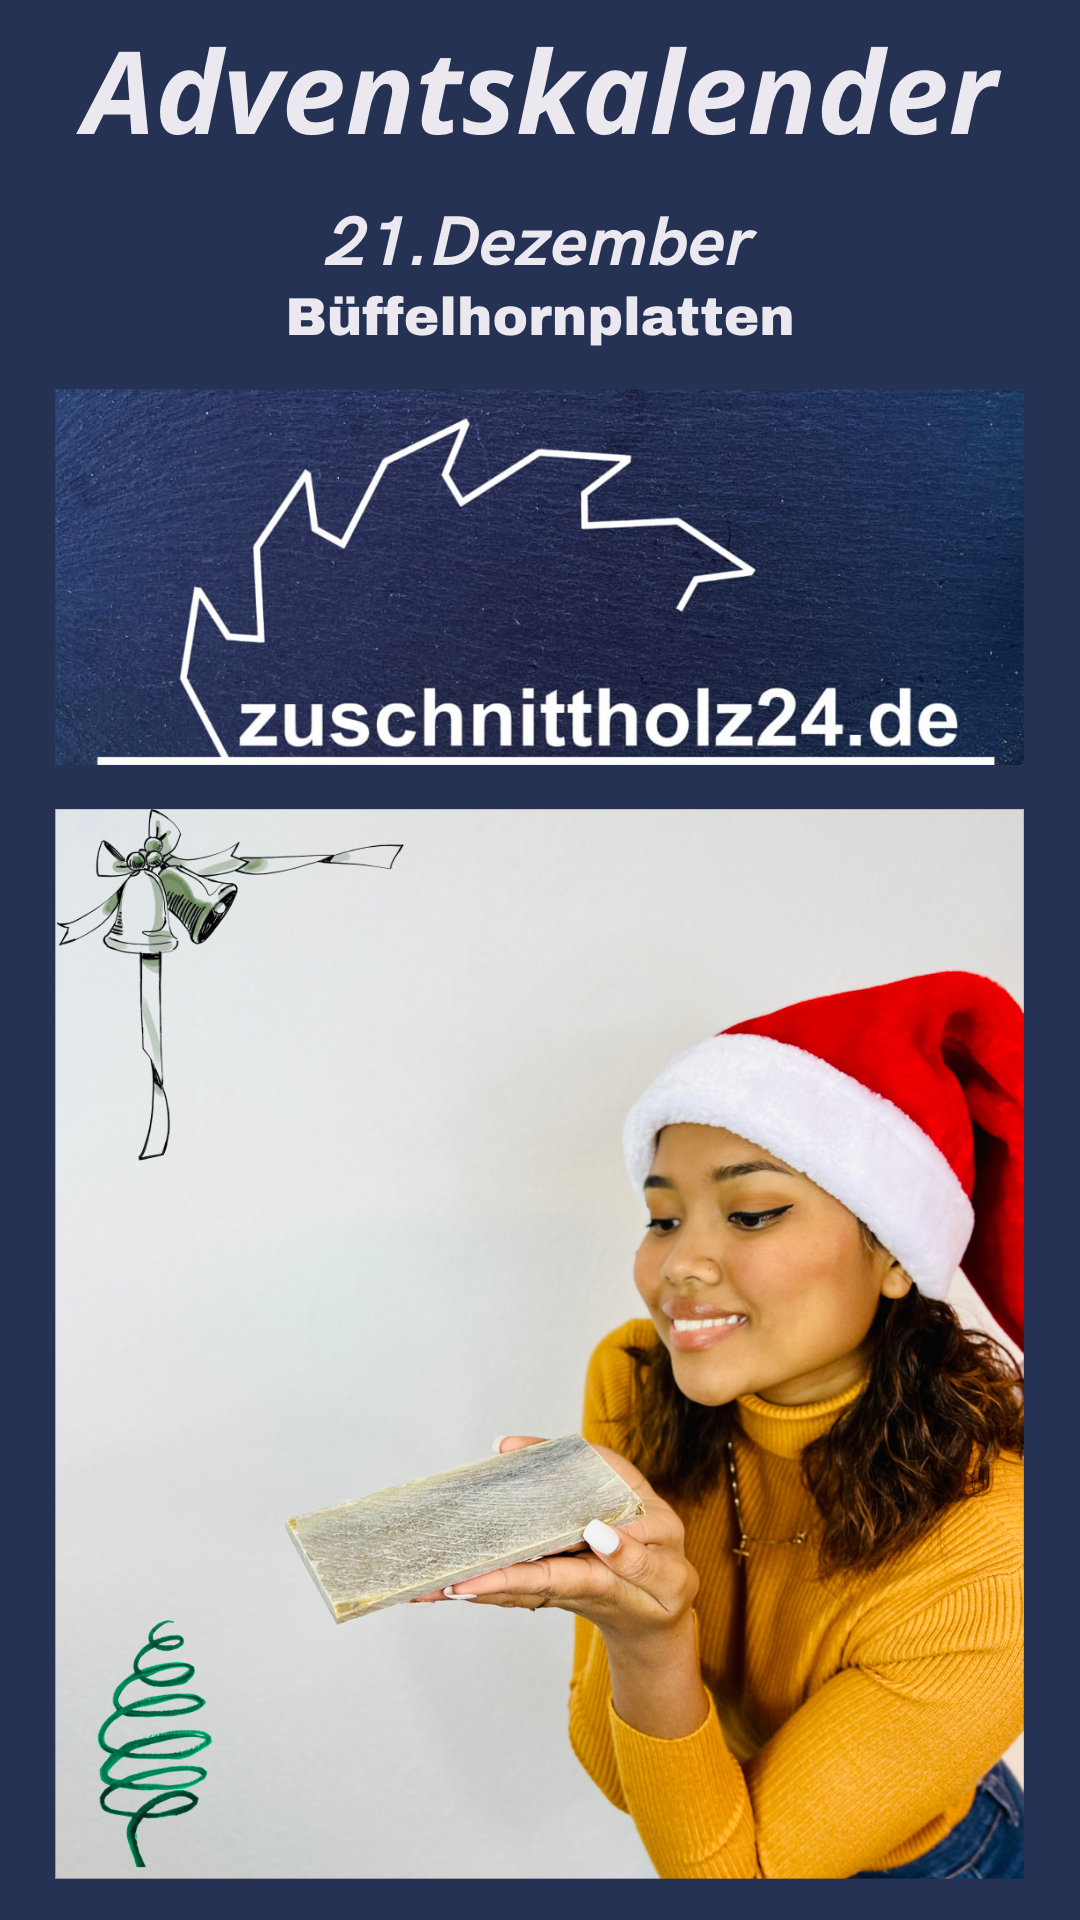 21.Adventskalender_Zuschnittholz24